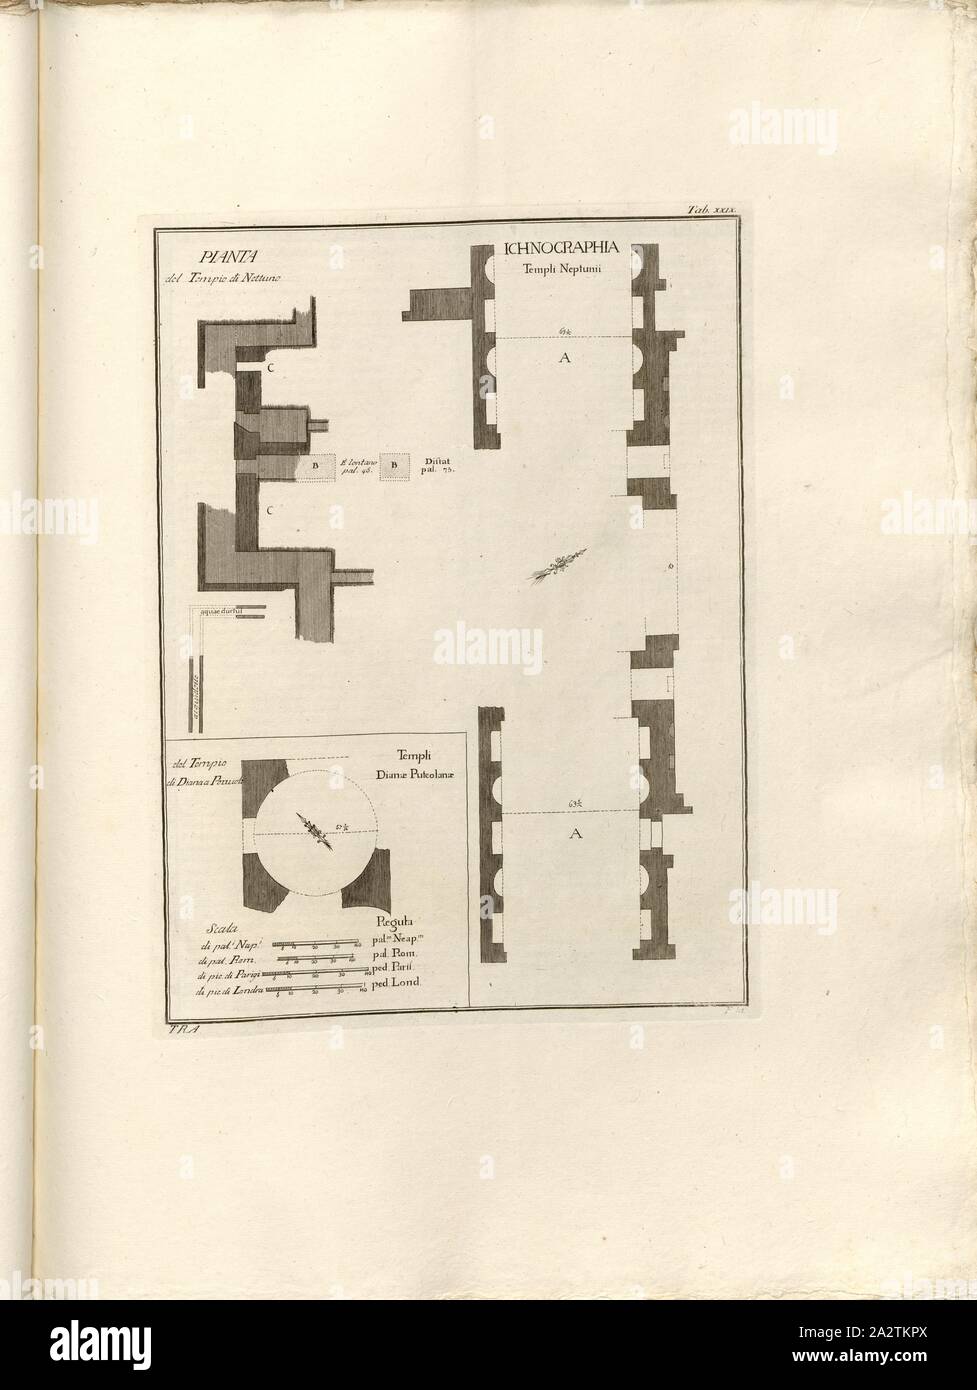 Plan of the Temple of Neptune, of the Temple of Diana in Pozzuolo, Floor plan of the ruins of the thermal baths 'Tempio di Nettuno' and the Nymphaeum (Diana Temple) in Pozzuoli, signed: T. R. A, In, tab. XXIX, Rajola, Tommaso (del.); Fiorillo, Nicola (sc.), 1768, Paolo Antonius Paoli: Avanzi delle antichita esistenti a Pozzuoli Cuma e Baja. [Neapel]: [s.n.], Anno A.C.N.MDCCLXVIII. [1768 Stock Photo